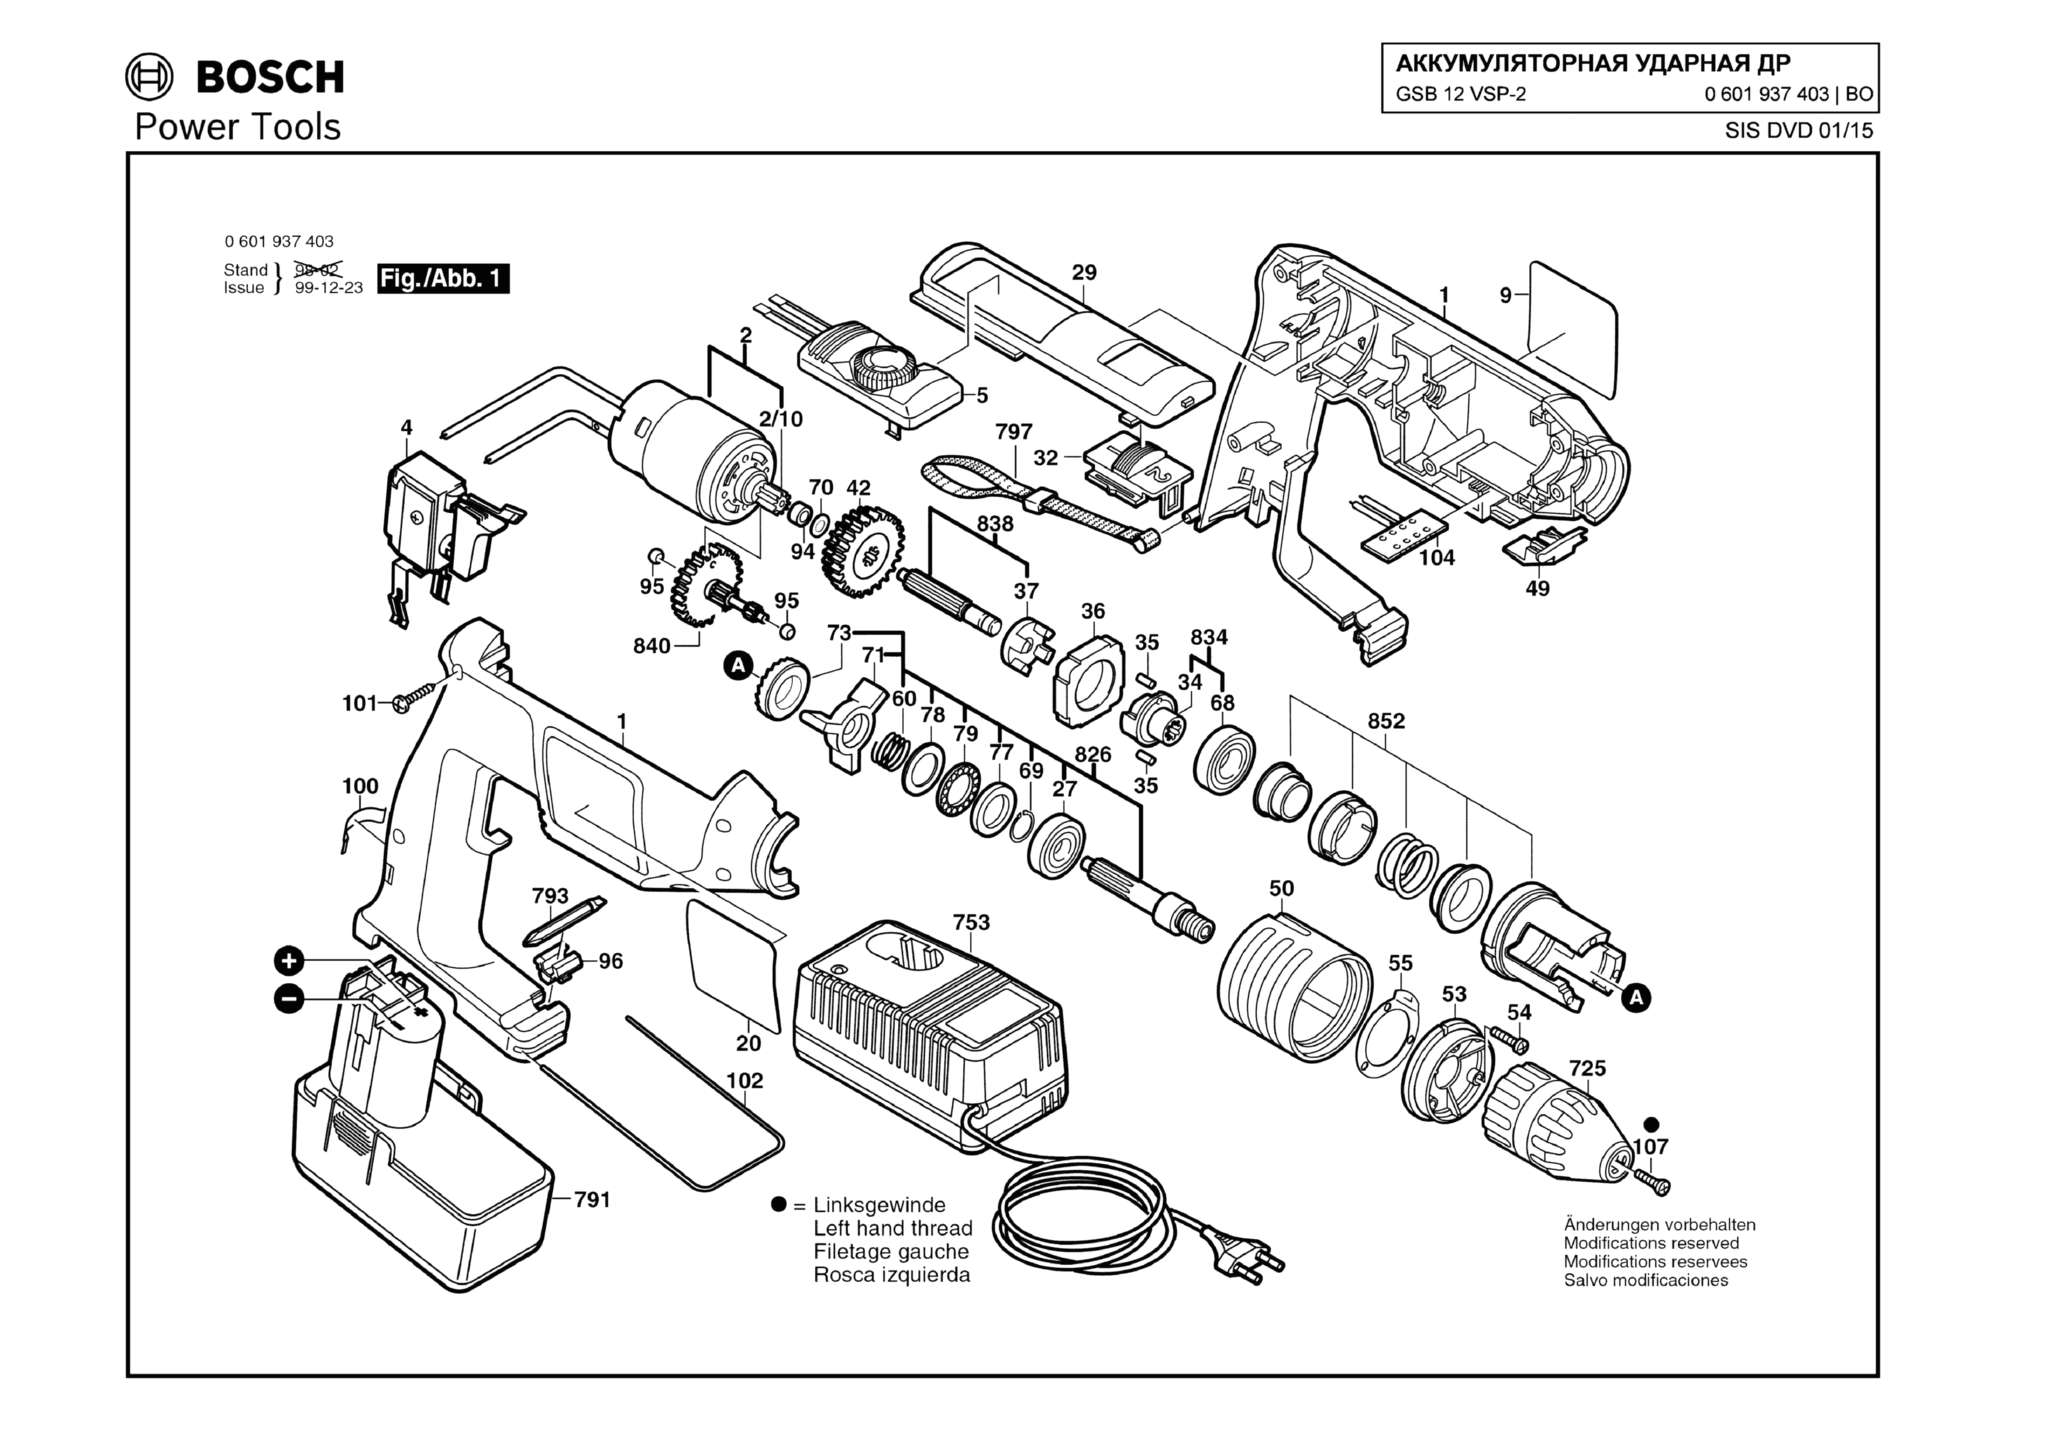 Запчасти, схема и деталировка Bosch GSB 12 VSP-2 (ТИП 0601937403)